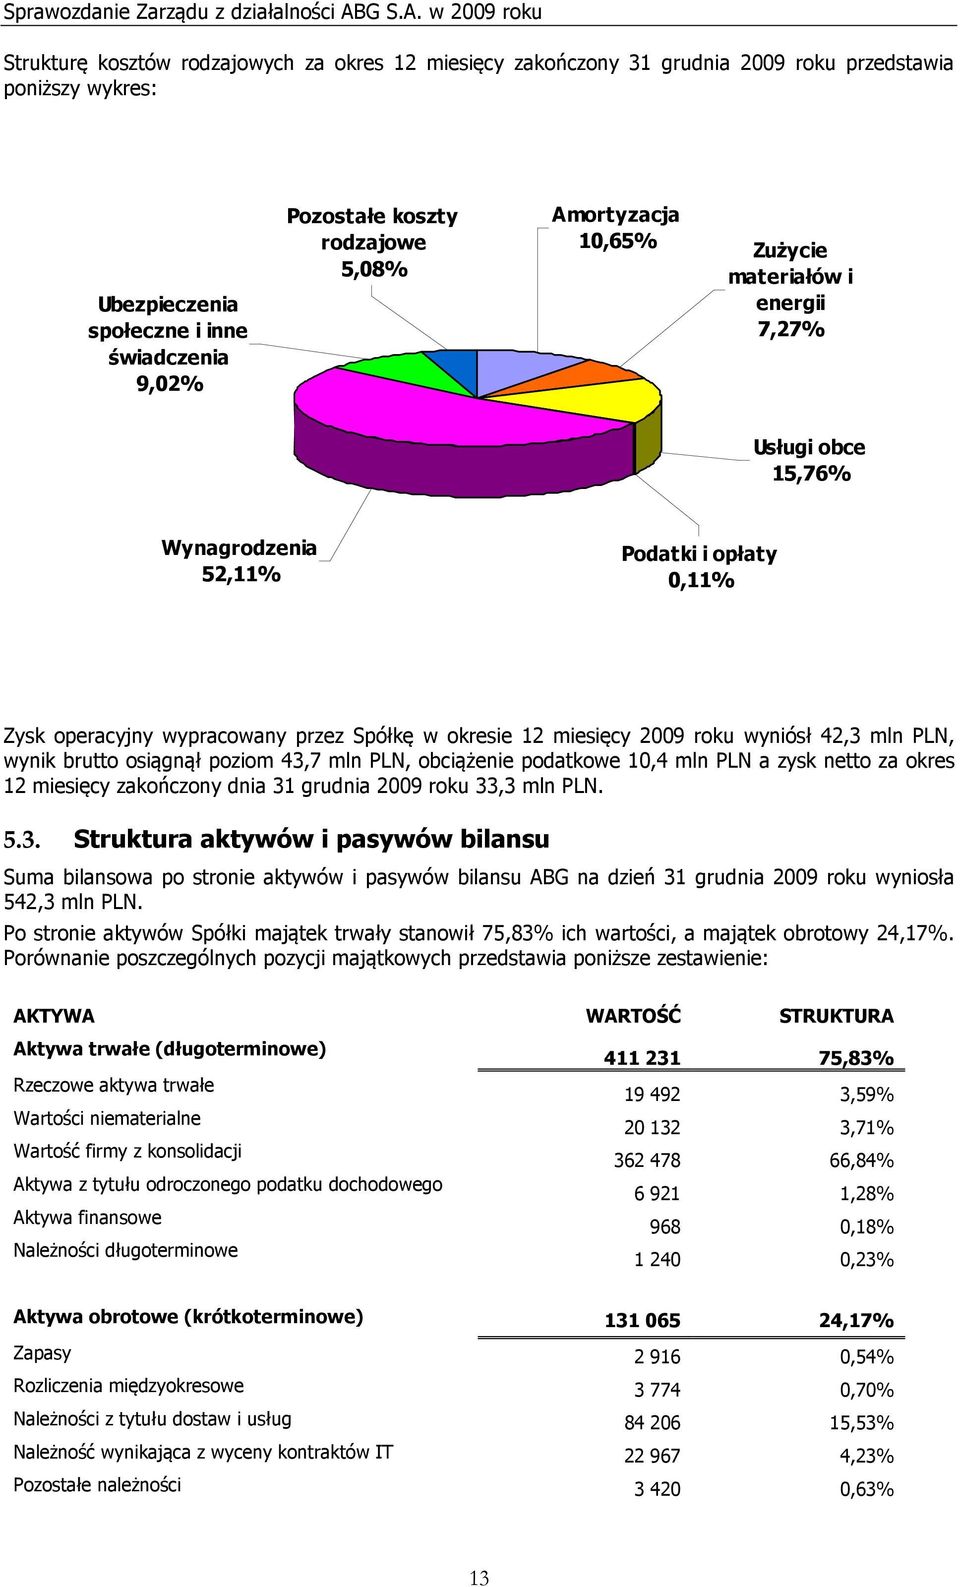 42,3 mln PLN, wynik brutto osiągnął poziom 43,7 mln PLN, obciążenie podatkowe 10,4 mln PLN a zysk netto za okres 12 miesięcy zakończony dnia 31 grudnia 2009 roku 33,3 mln PLN. 5.3. Struktura aktywów i pasywów bilansu Suma bilansowa po stronie aktywów i pasywów bilansu ABG na dzień 31 grudnia 2009 roku wyniosła 542,3 mln PLN.